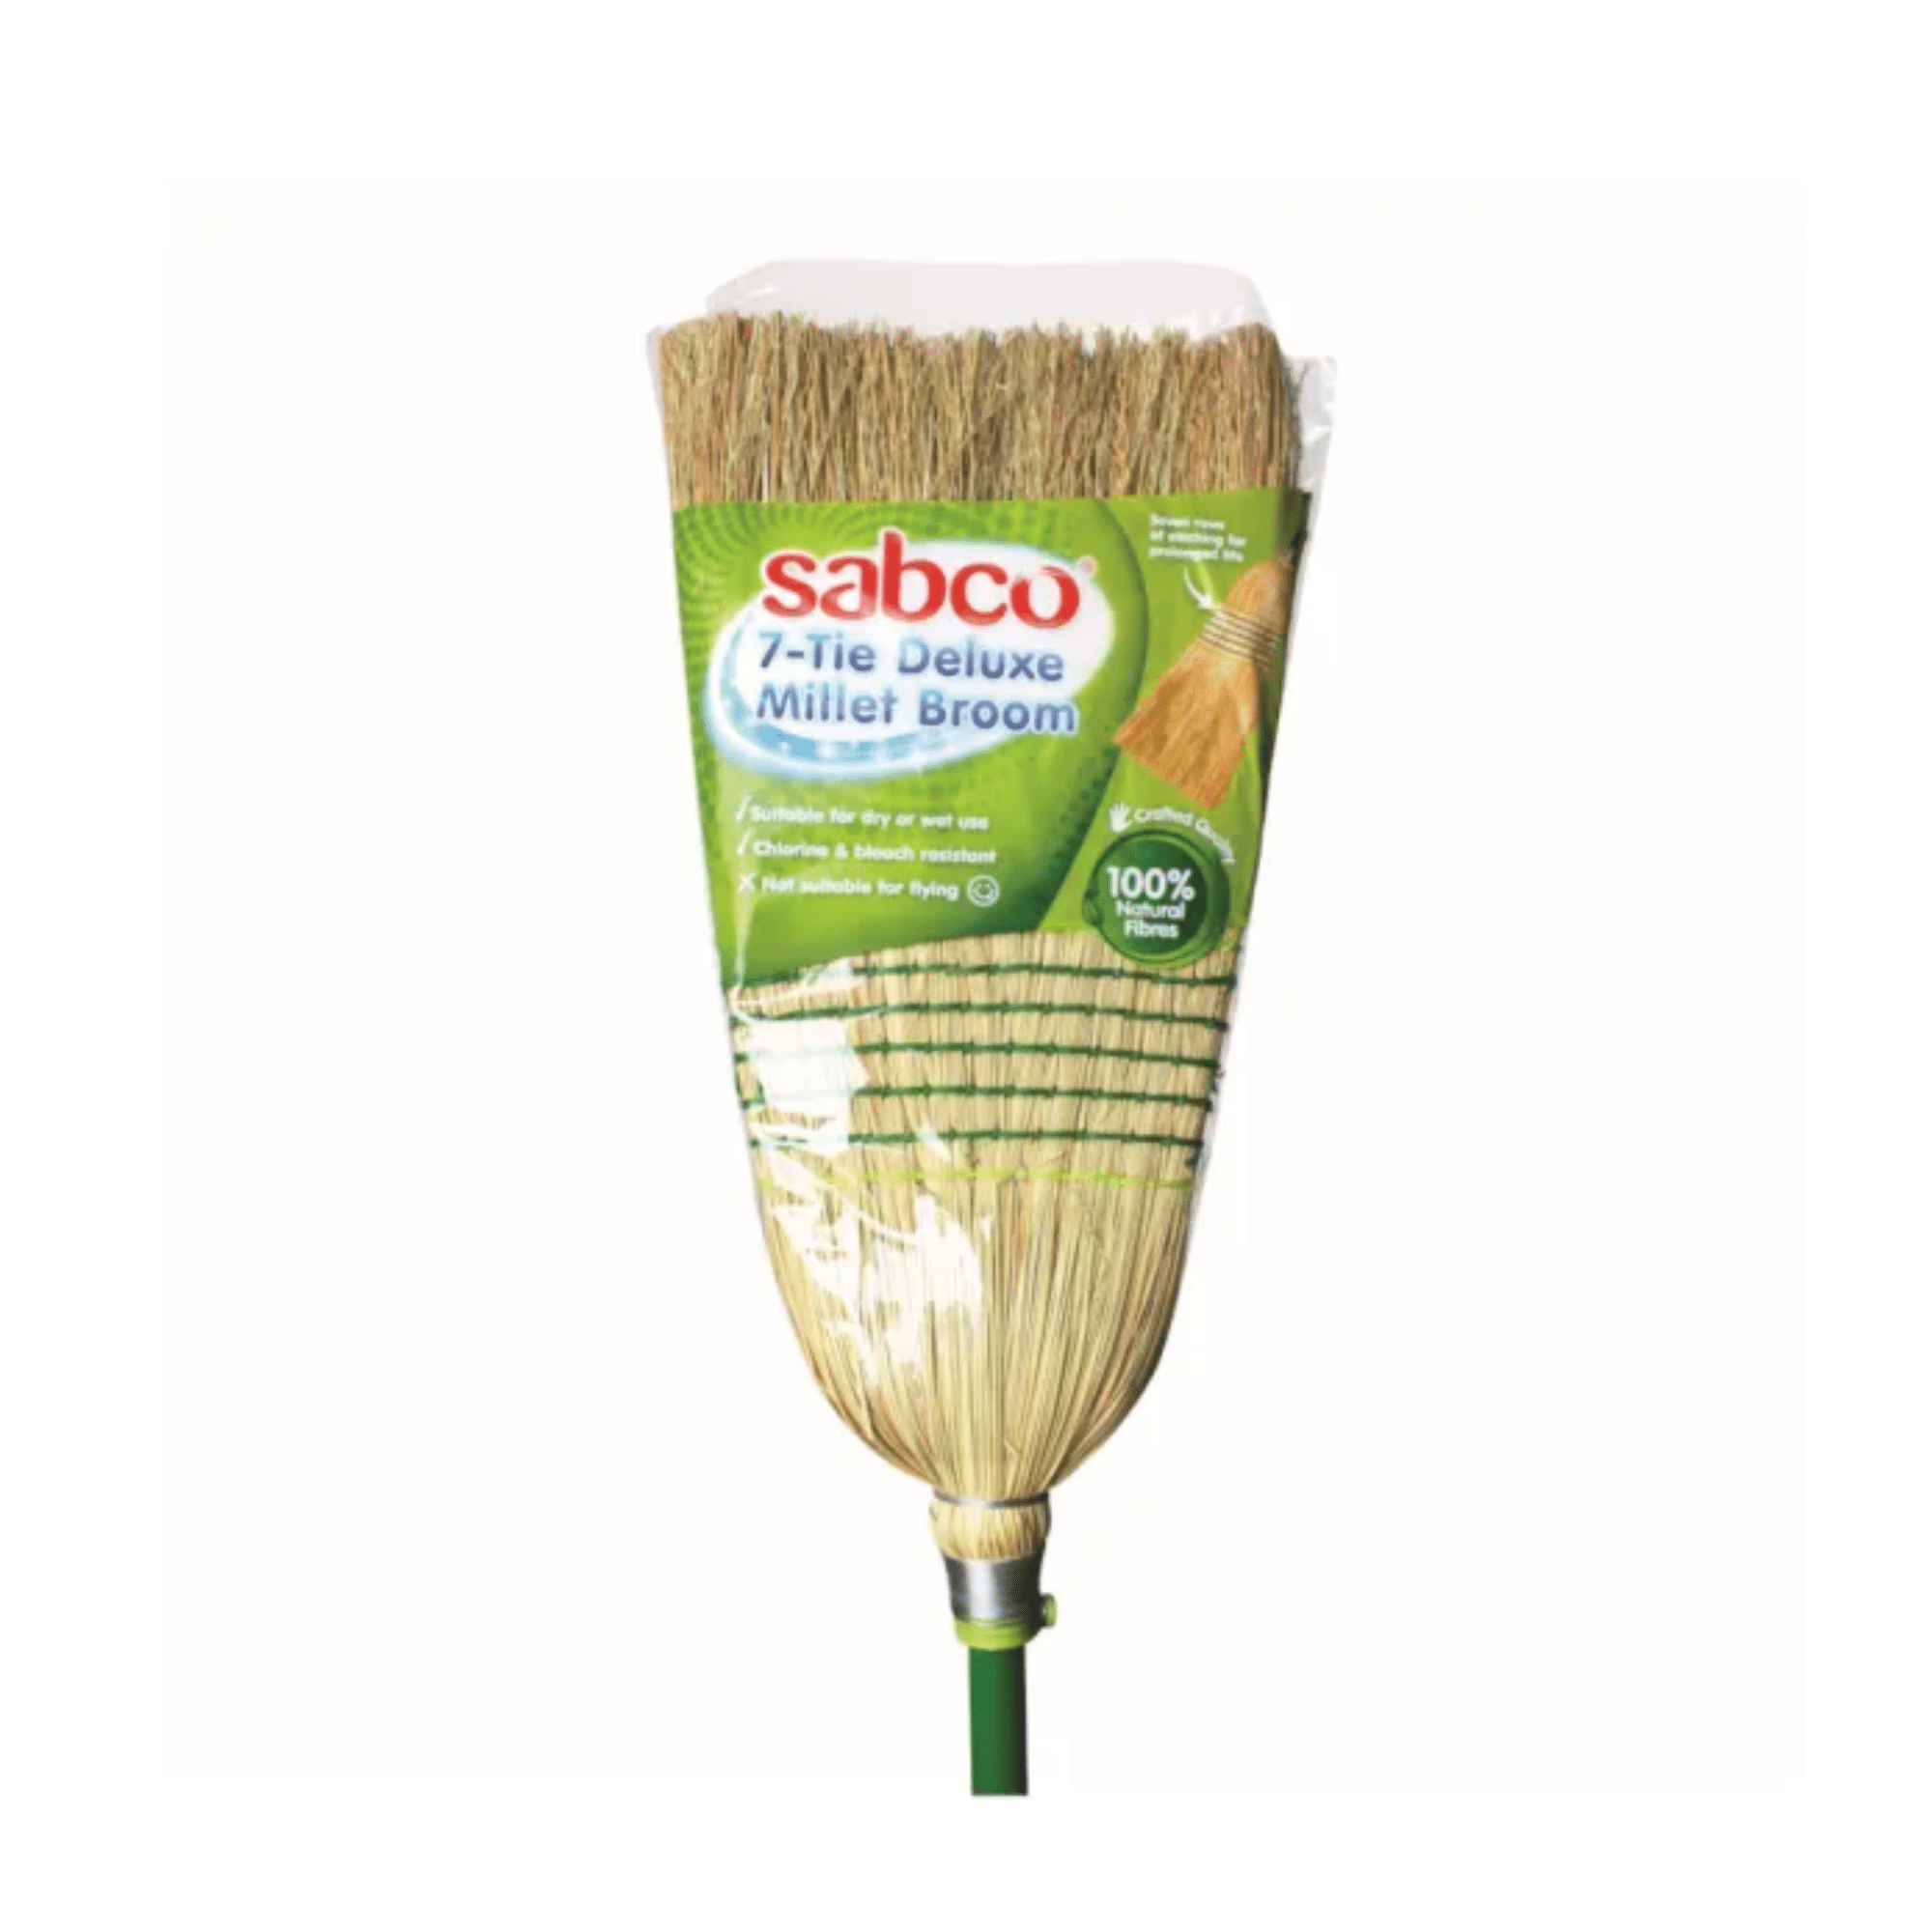 7 Tie Millet Broom – Premium – Sabco